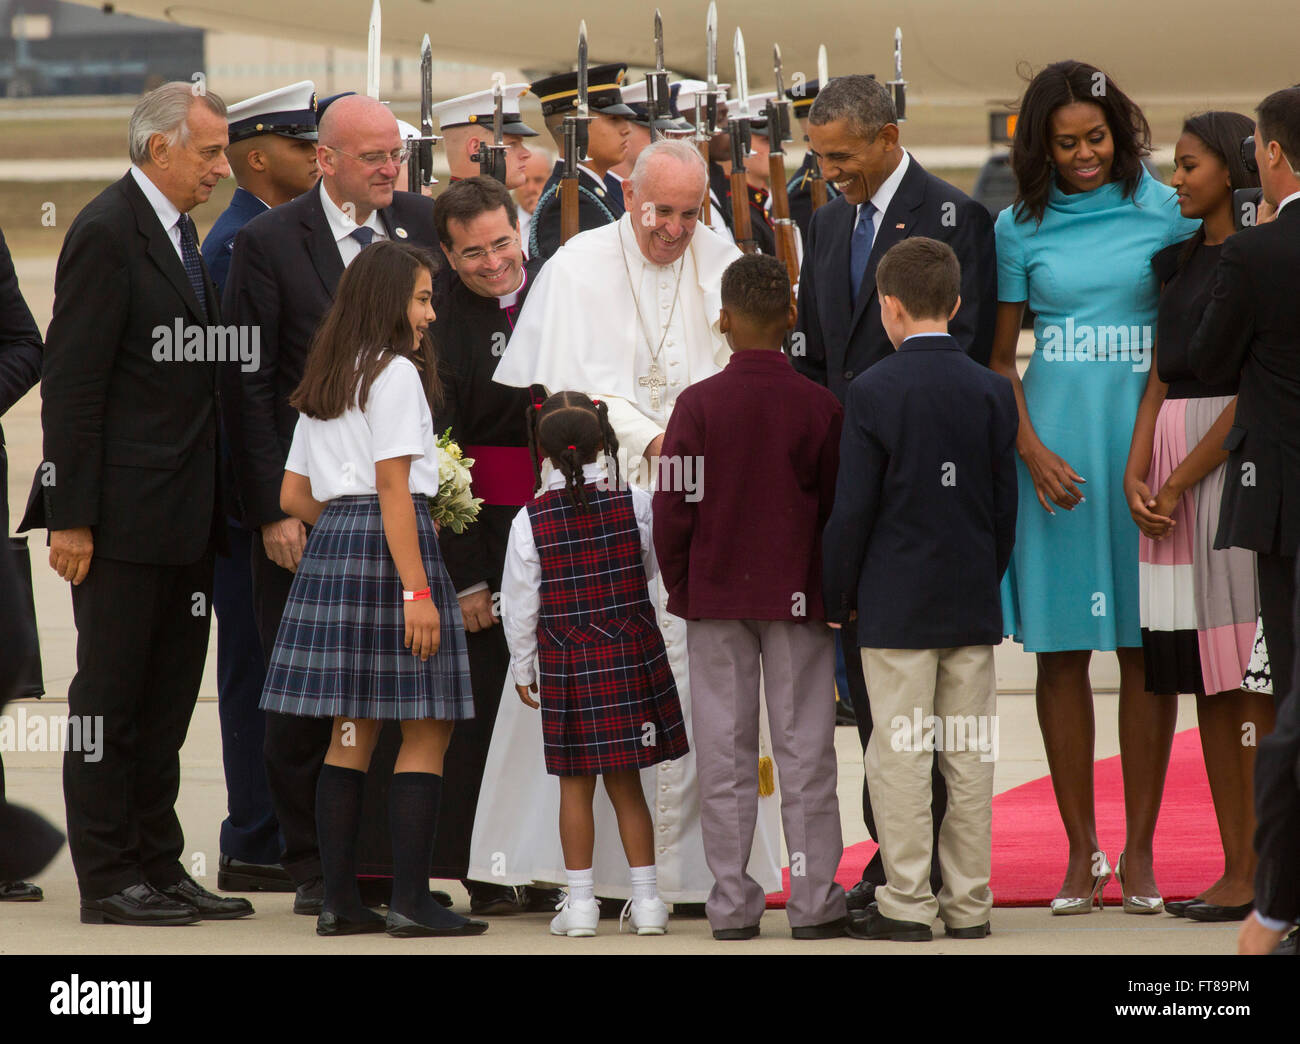 Le Pape arrive à Joint Base Andrews près de Washington D.C. et, avec le président Obama, rencontre avec les enfants des écoles qui présentent des fleurs avec lui alors qu'il commence sa tournée de trois villes des États-Unis. Photo de James Tourtellotte. Banque D'Images